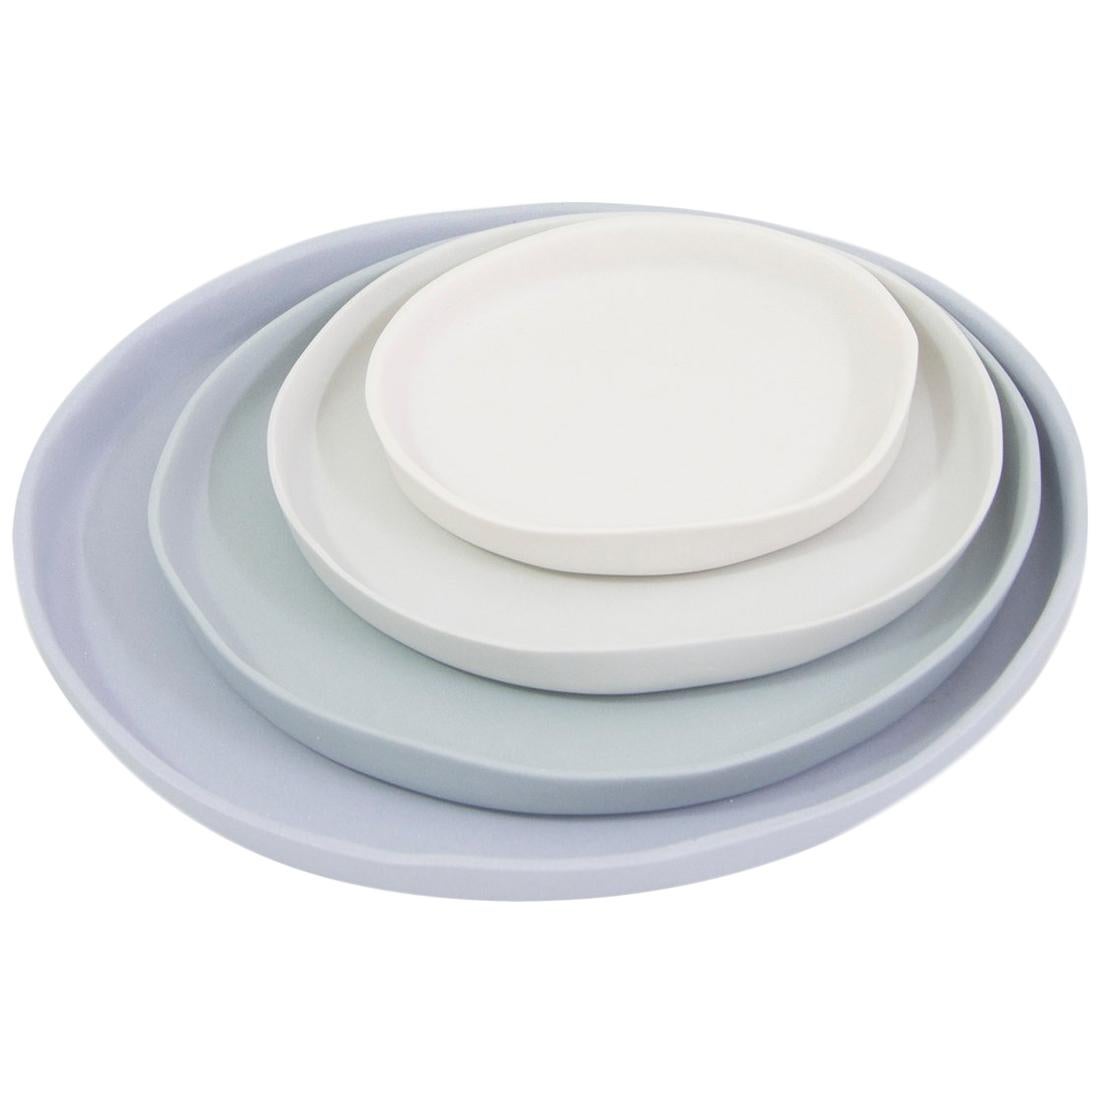 Contemporary Service Plates Matte Grey Porcelain For Sale